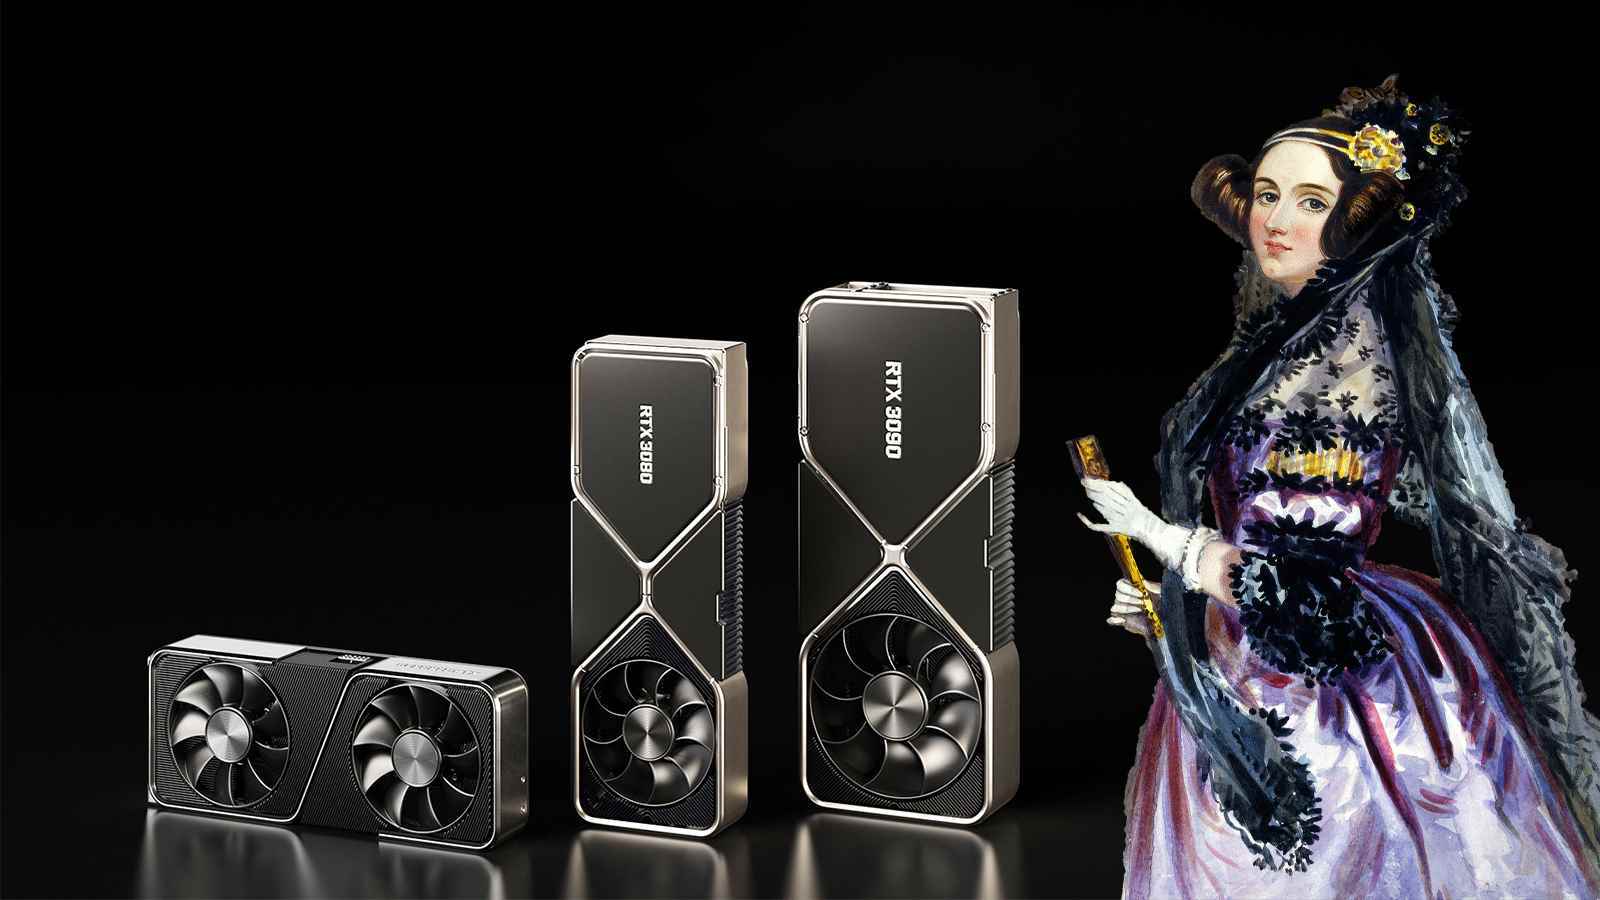 Nvidia 5 Nanometre GPU, Ada Lovelace'ı Onurlandırmak İçin